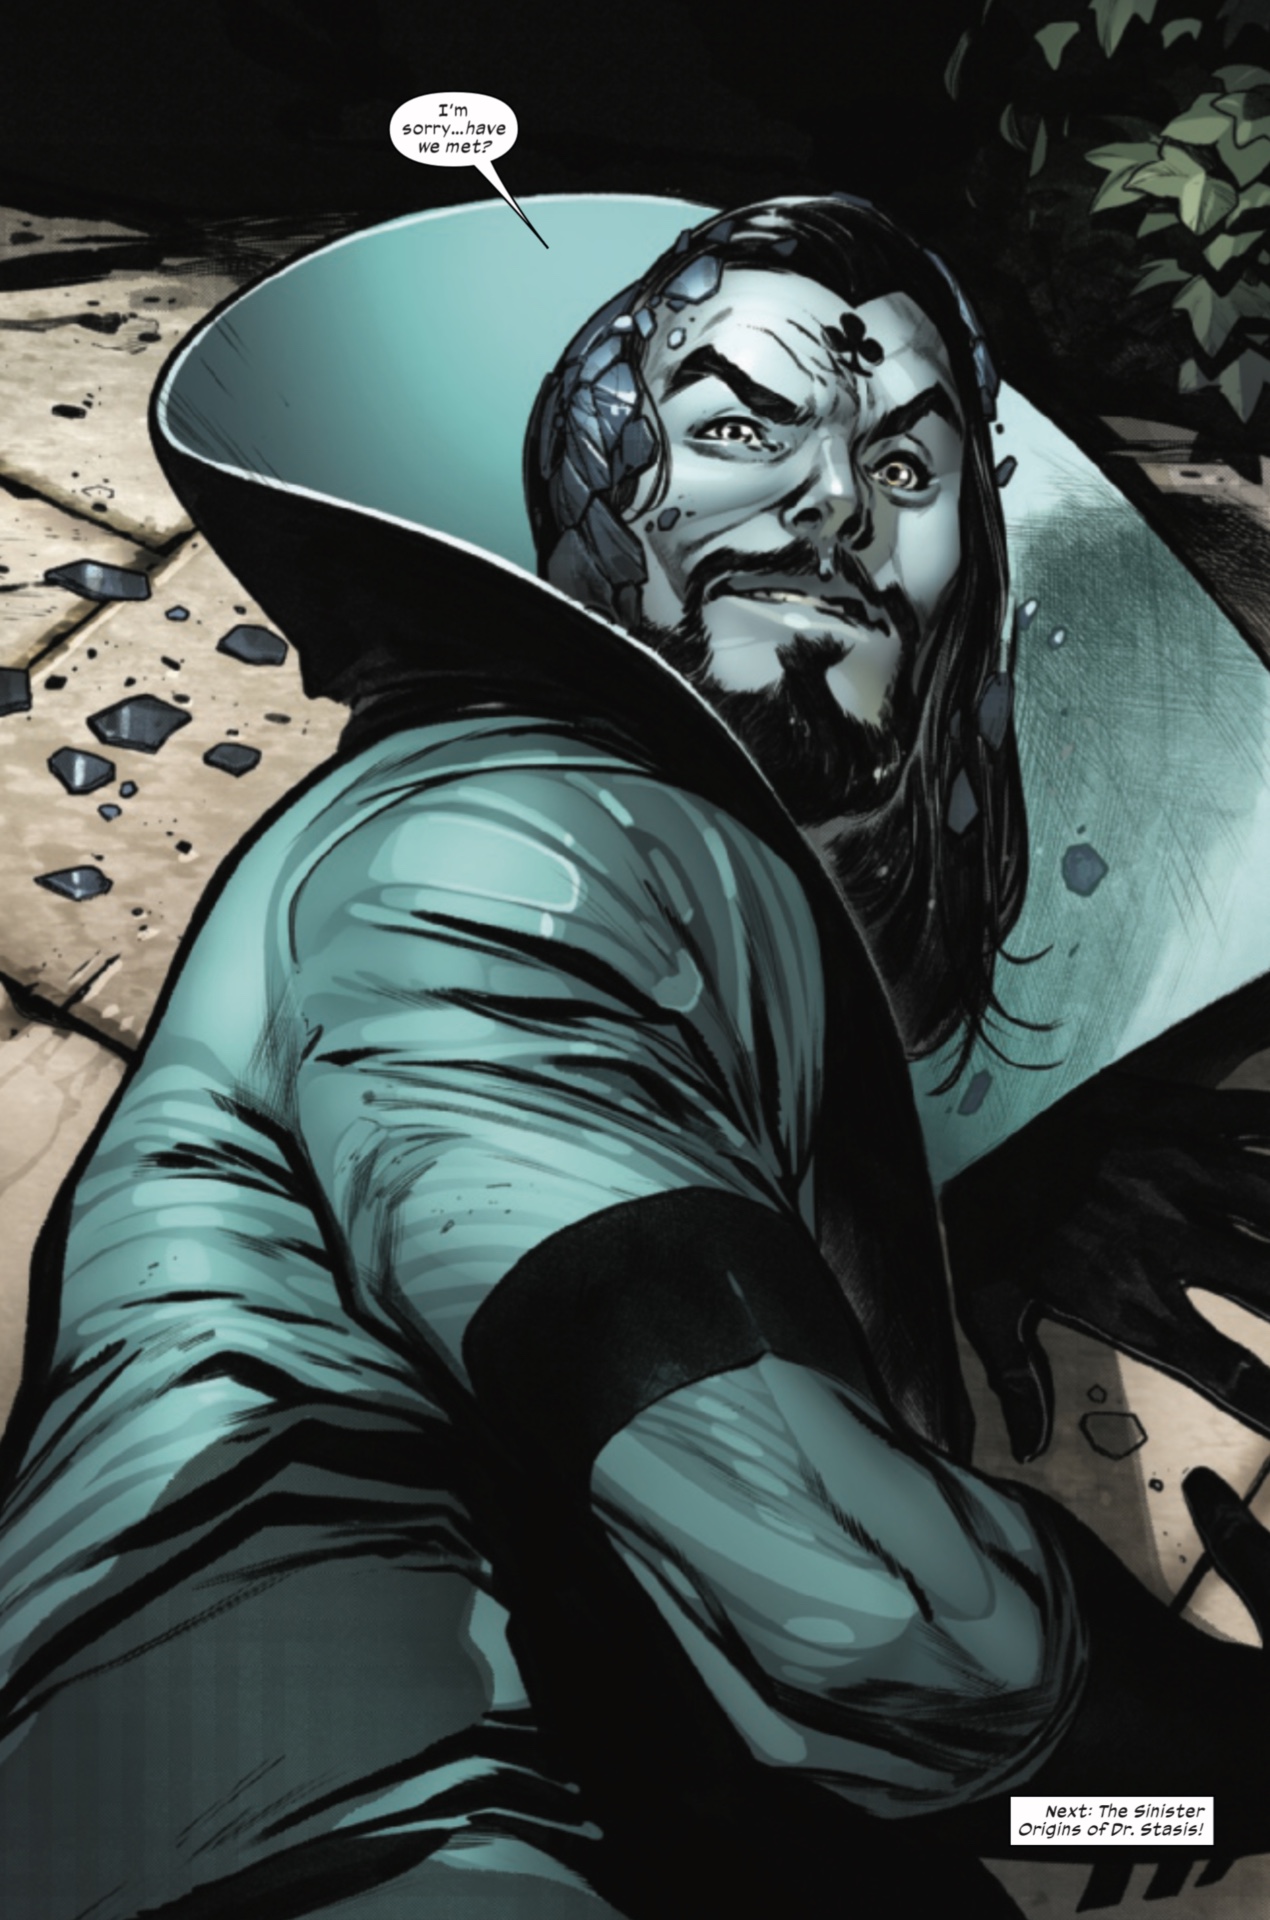 La identidad secreta del Dr. Stasis revelada en X-Men #11